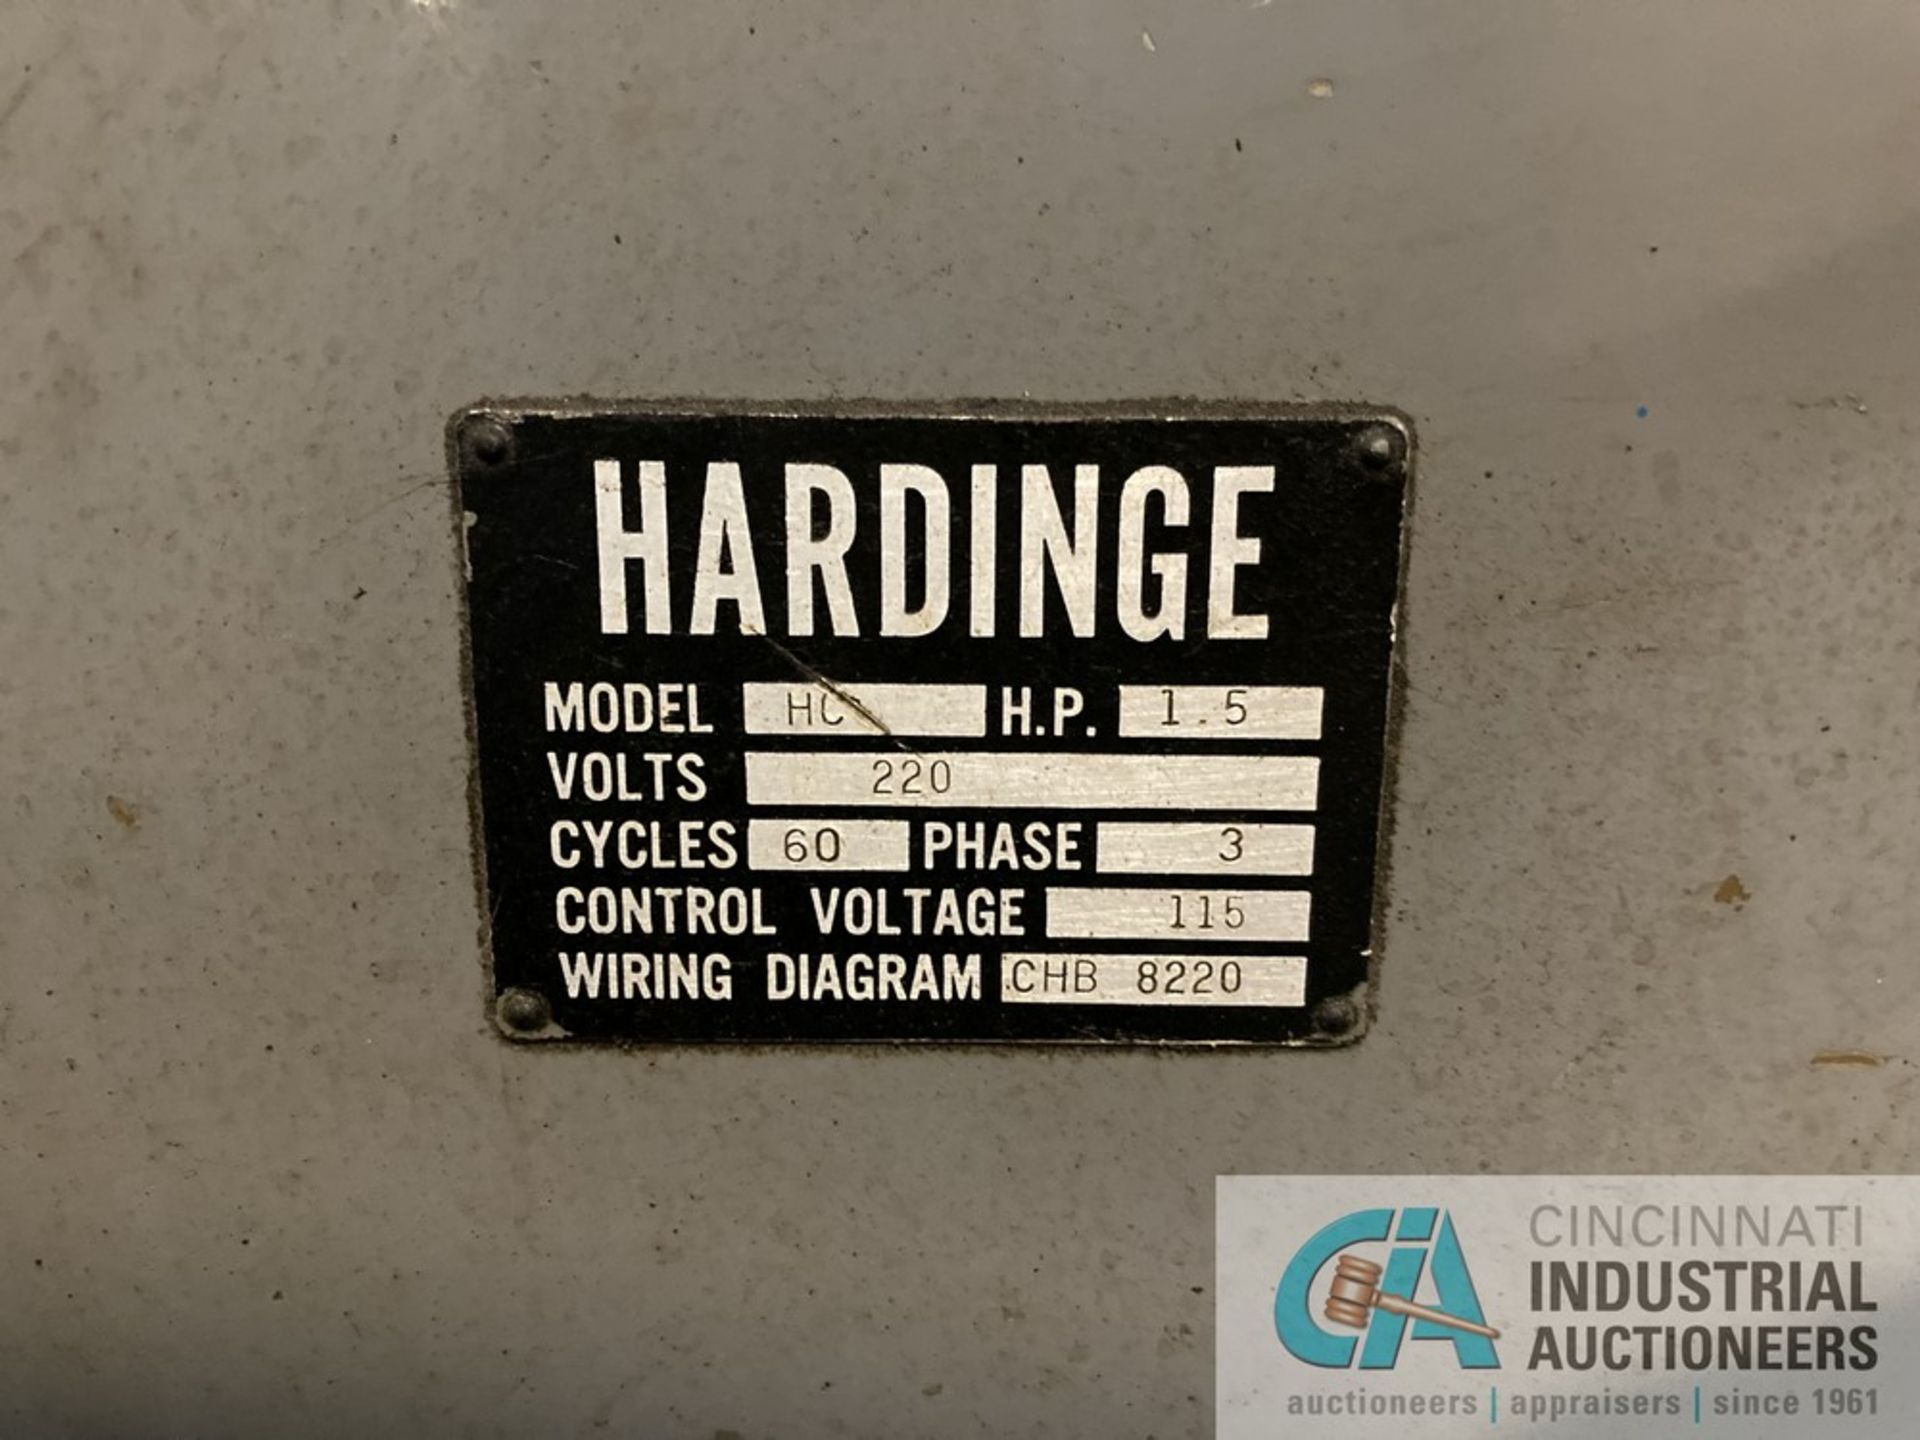 HARDINGE MODEL HC TOOLROOM LATHE - Image 4 of 4